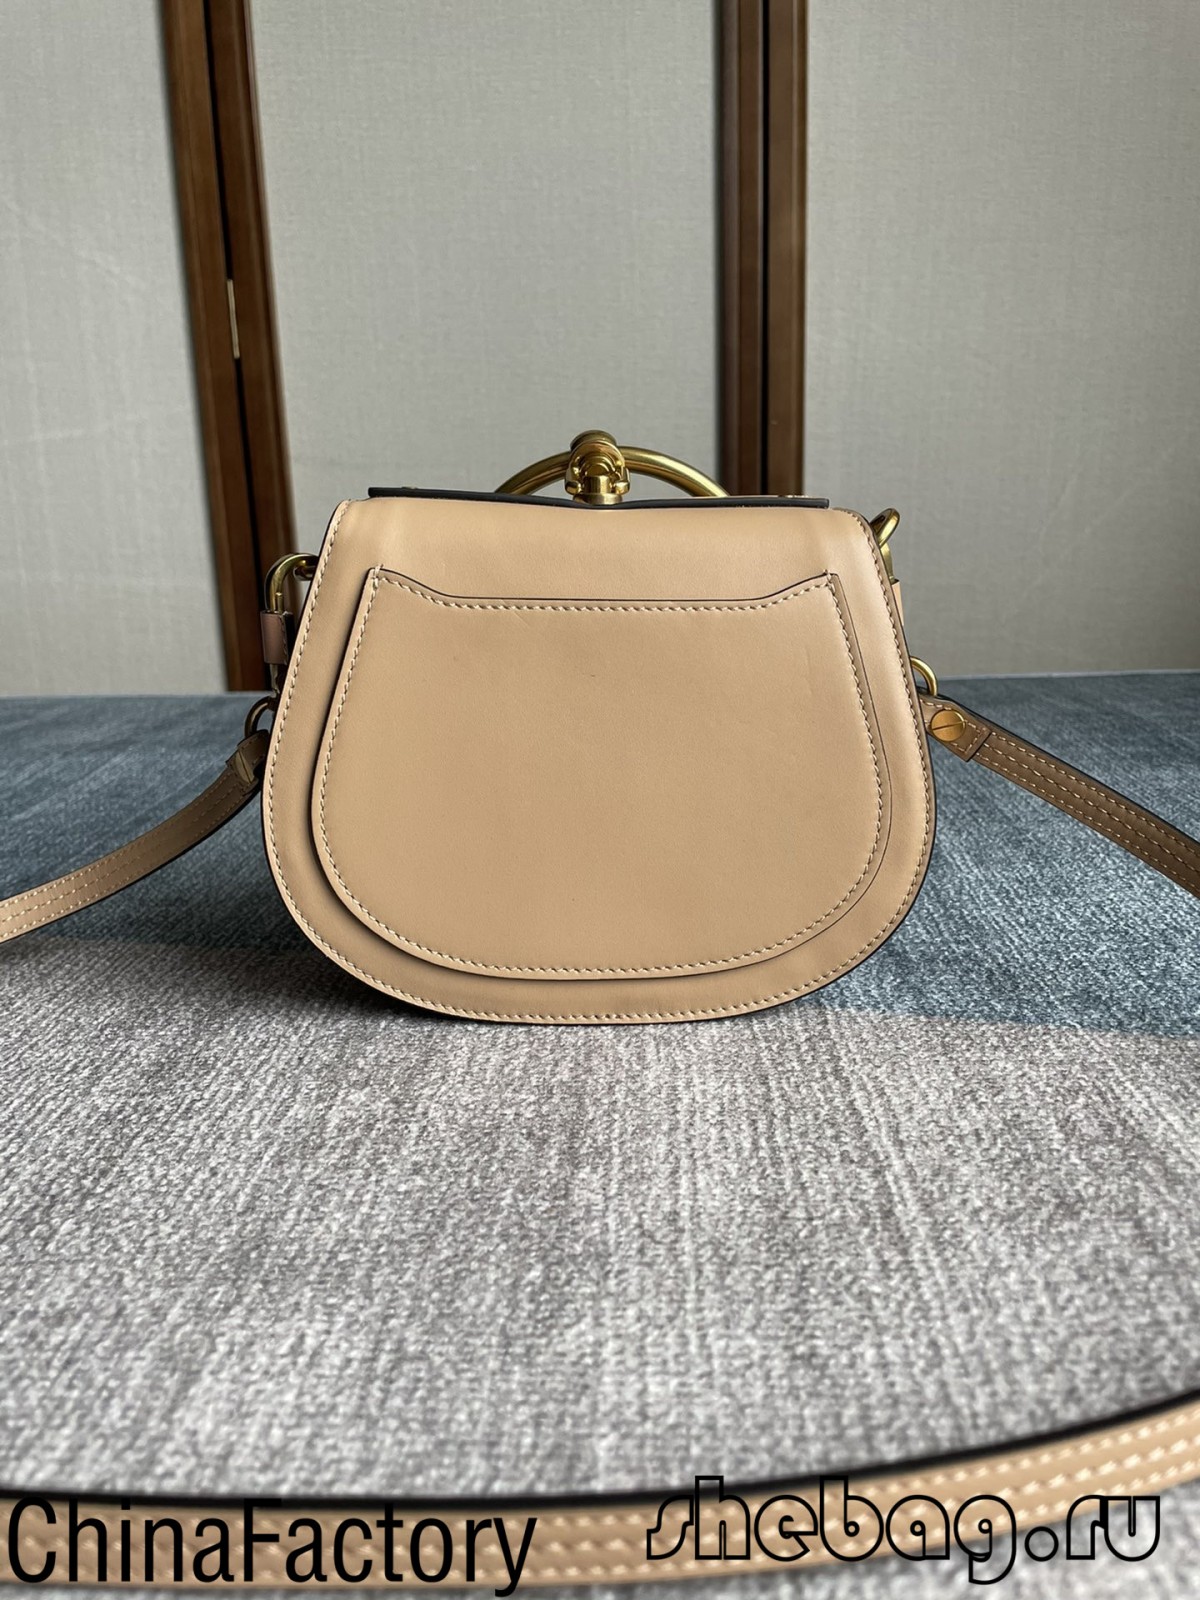 A legjobb minőségű Chloe Nile táska replika gyár Kínában (2022 legforróbb)-Legjobb minőségű hamis Louis Vuitton táska online áruház, replika designer táska ru